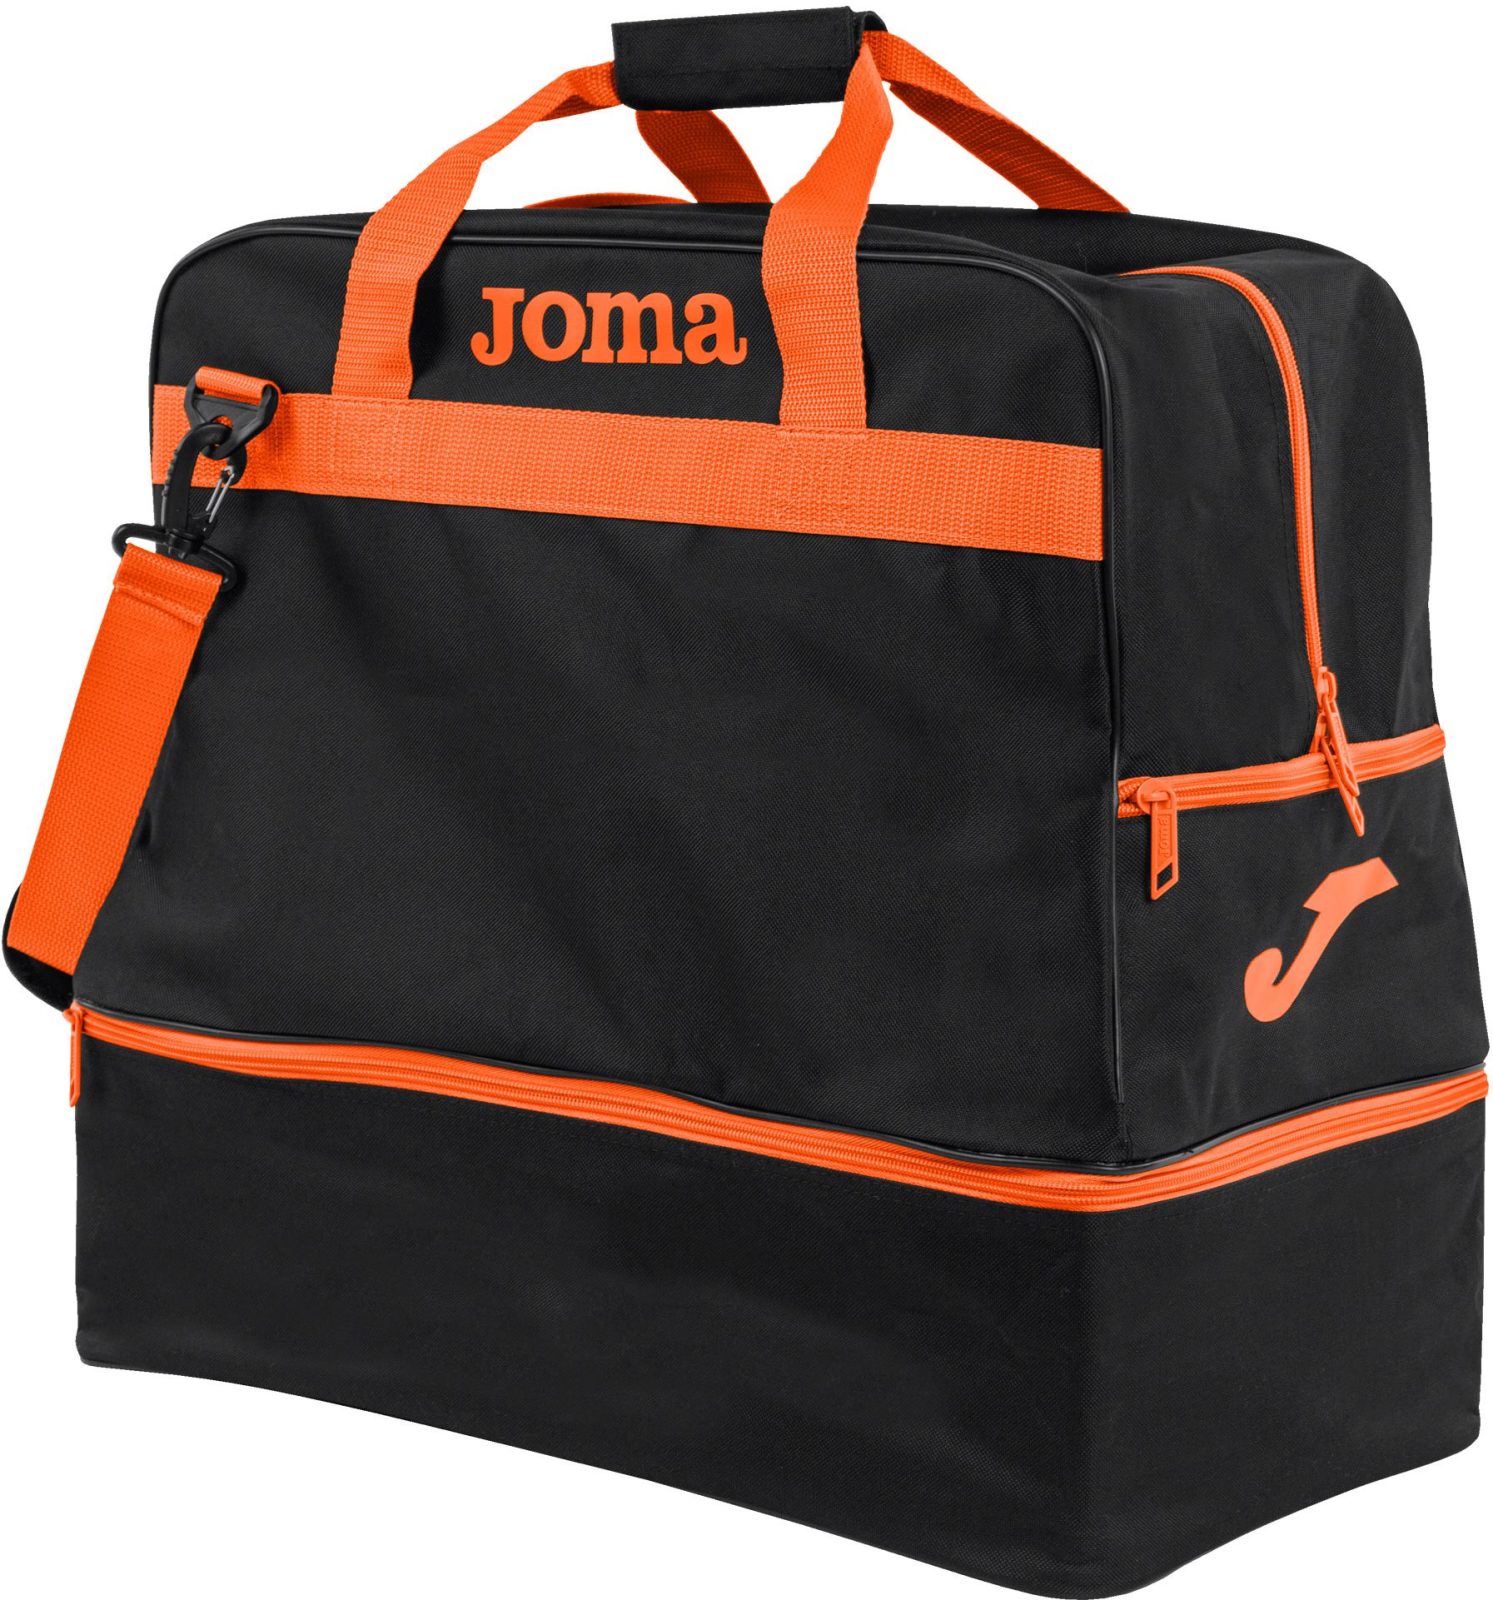 Sporttáska Joma Trainning III black - orange - L